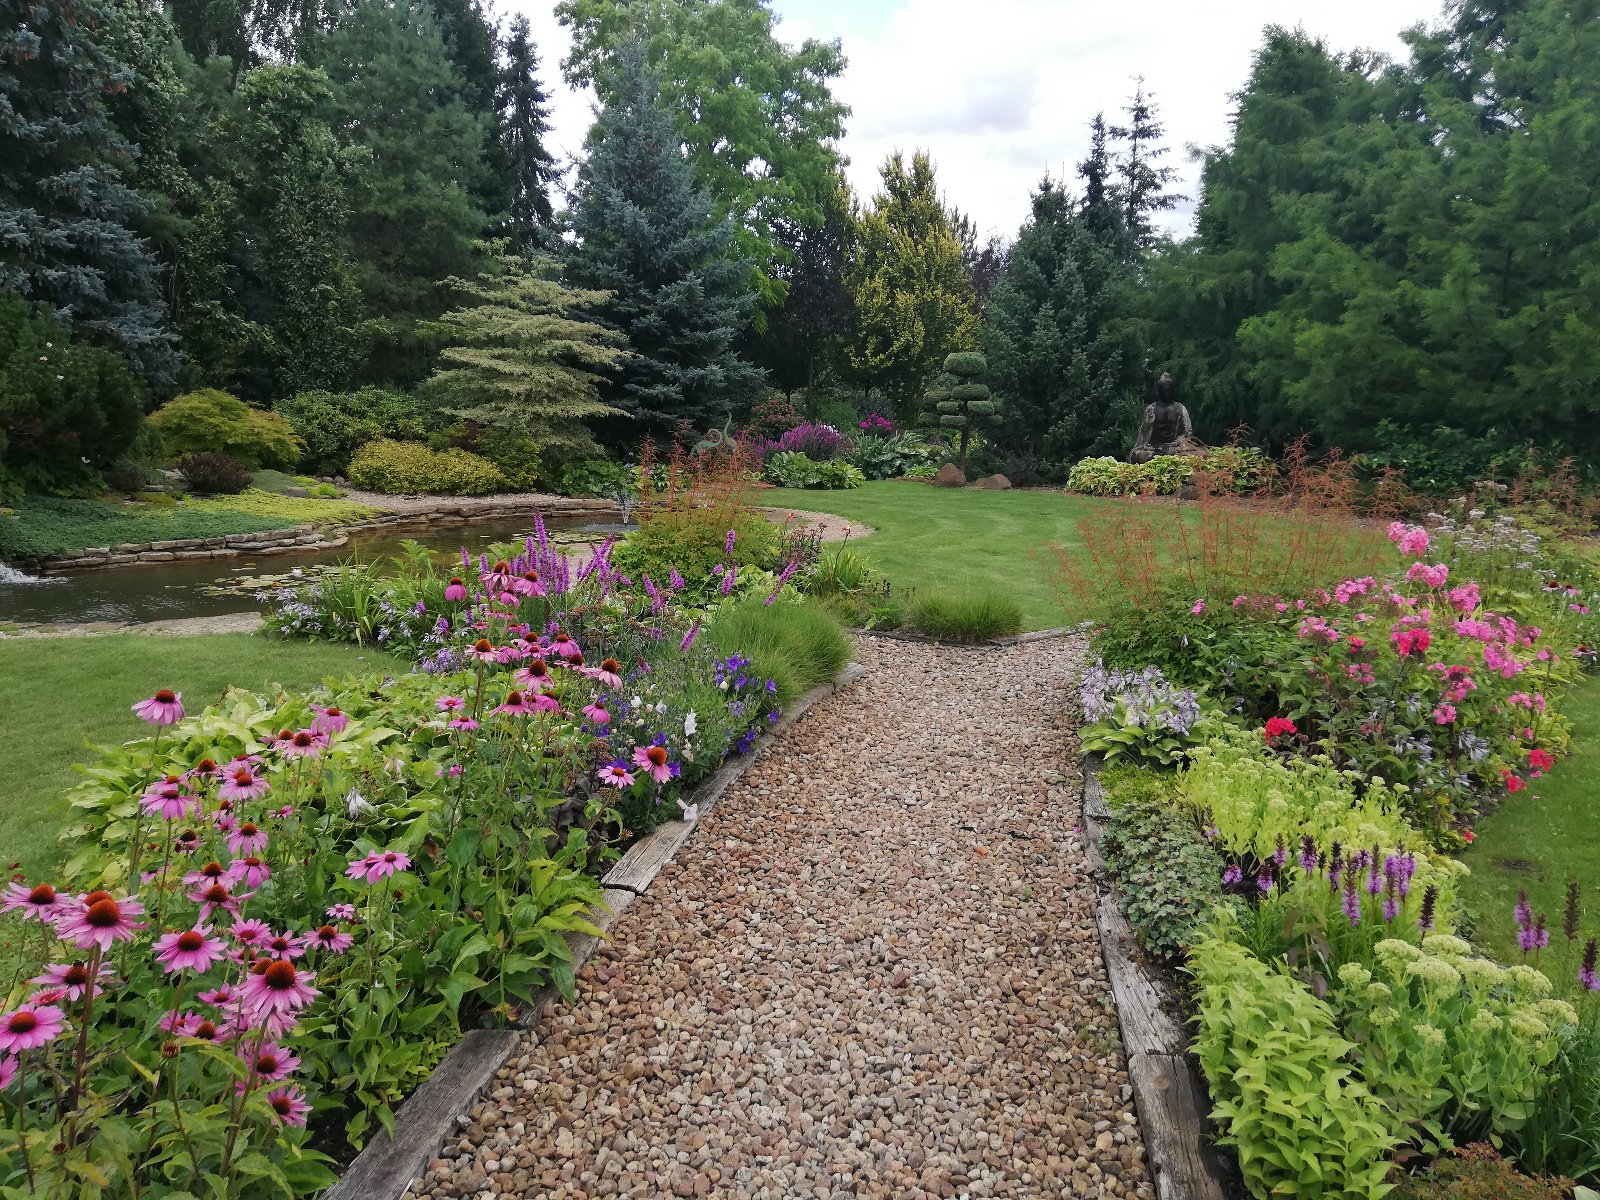 1 miejsce - ogród przydomowy (Rada Osiedla Krzyżowniki-Smochowice ) , na pierwszym planie widać ukwieconą alejkę ogrodową z kolorowymi ,różowymi,fioletowymi i czerwonymi kwiatami, królują fioletowe liatry kłosowe, różowe jeżówki,różowe floksy, zielone rozchodniki wyniosłe, w oddali widać oczko wodne z liliami wodnymi i żurawie jako małe ozdoby ogrodowe ,posąg Buddy i rabaty z krzewów ozdobnych i wyższych roślin iglastych - grafika artykułu